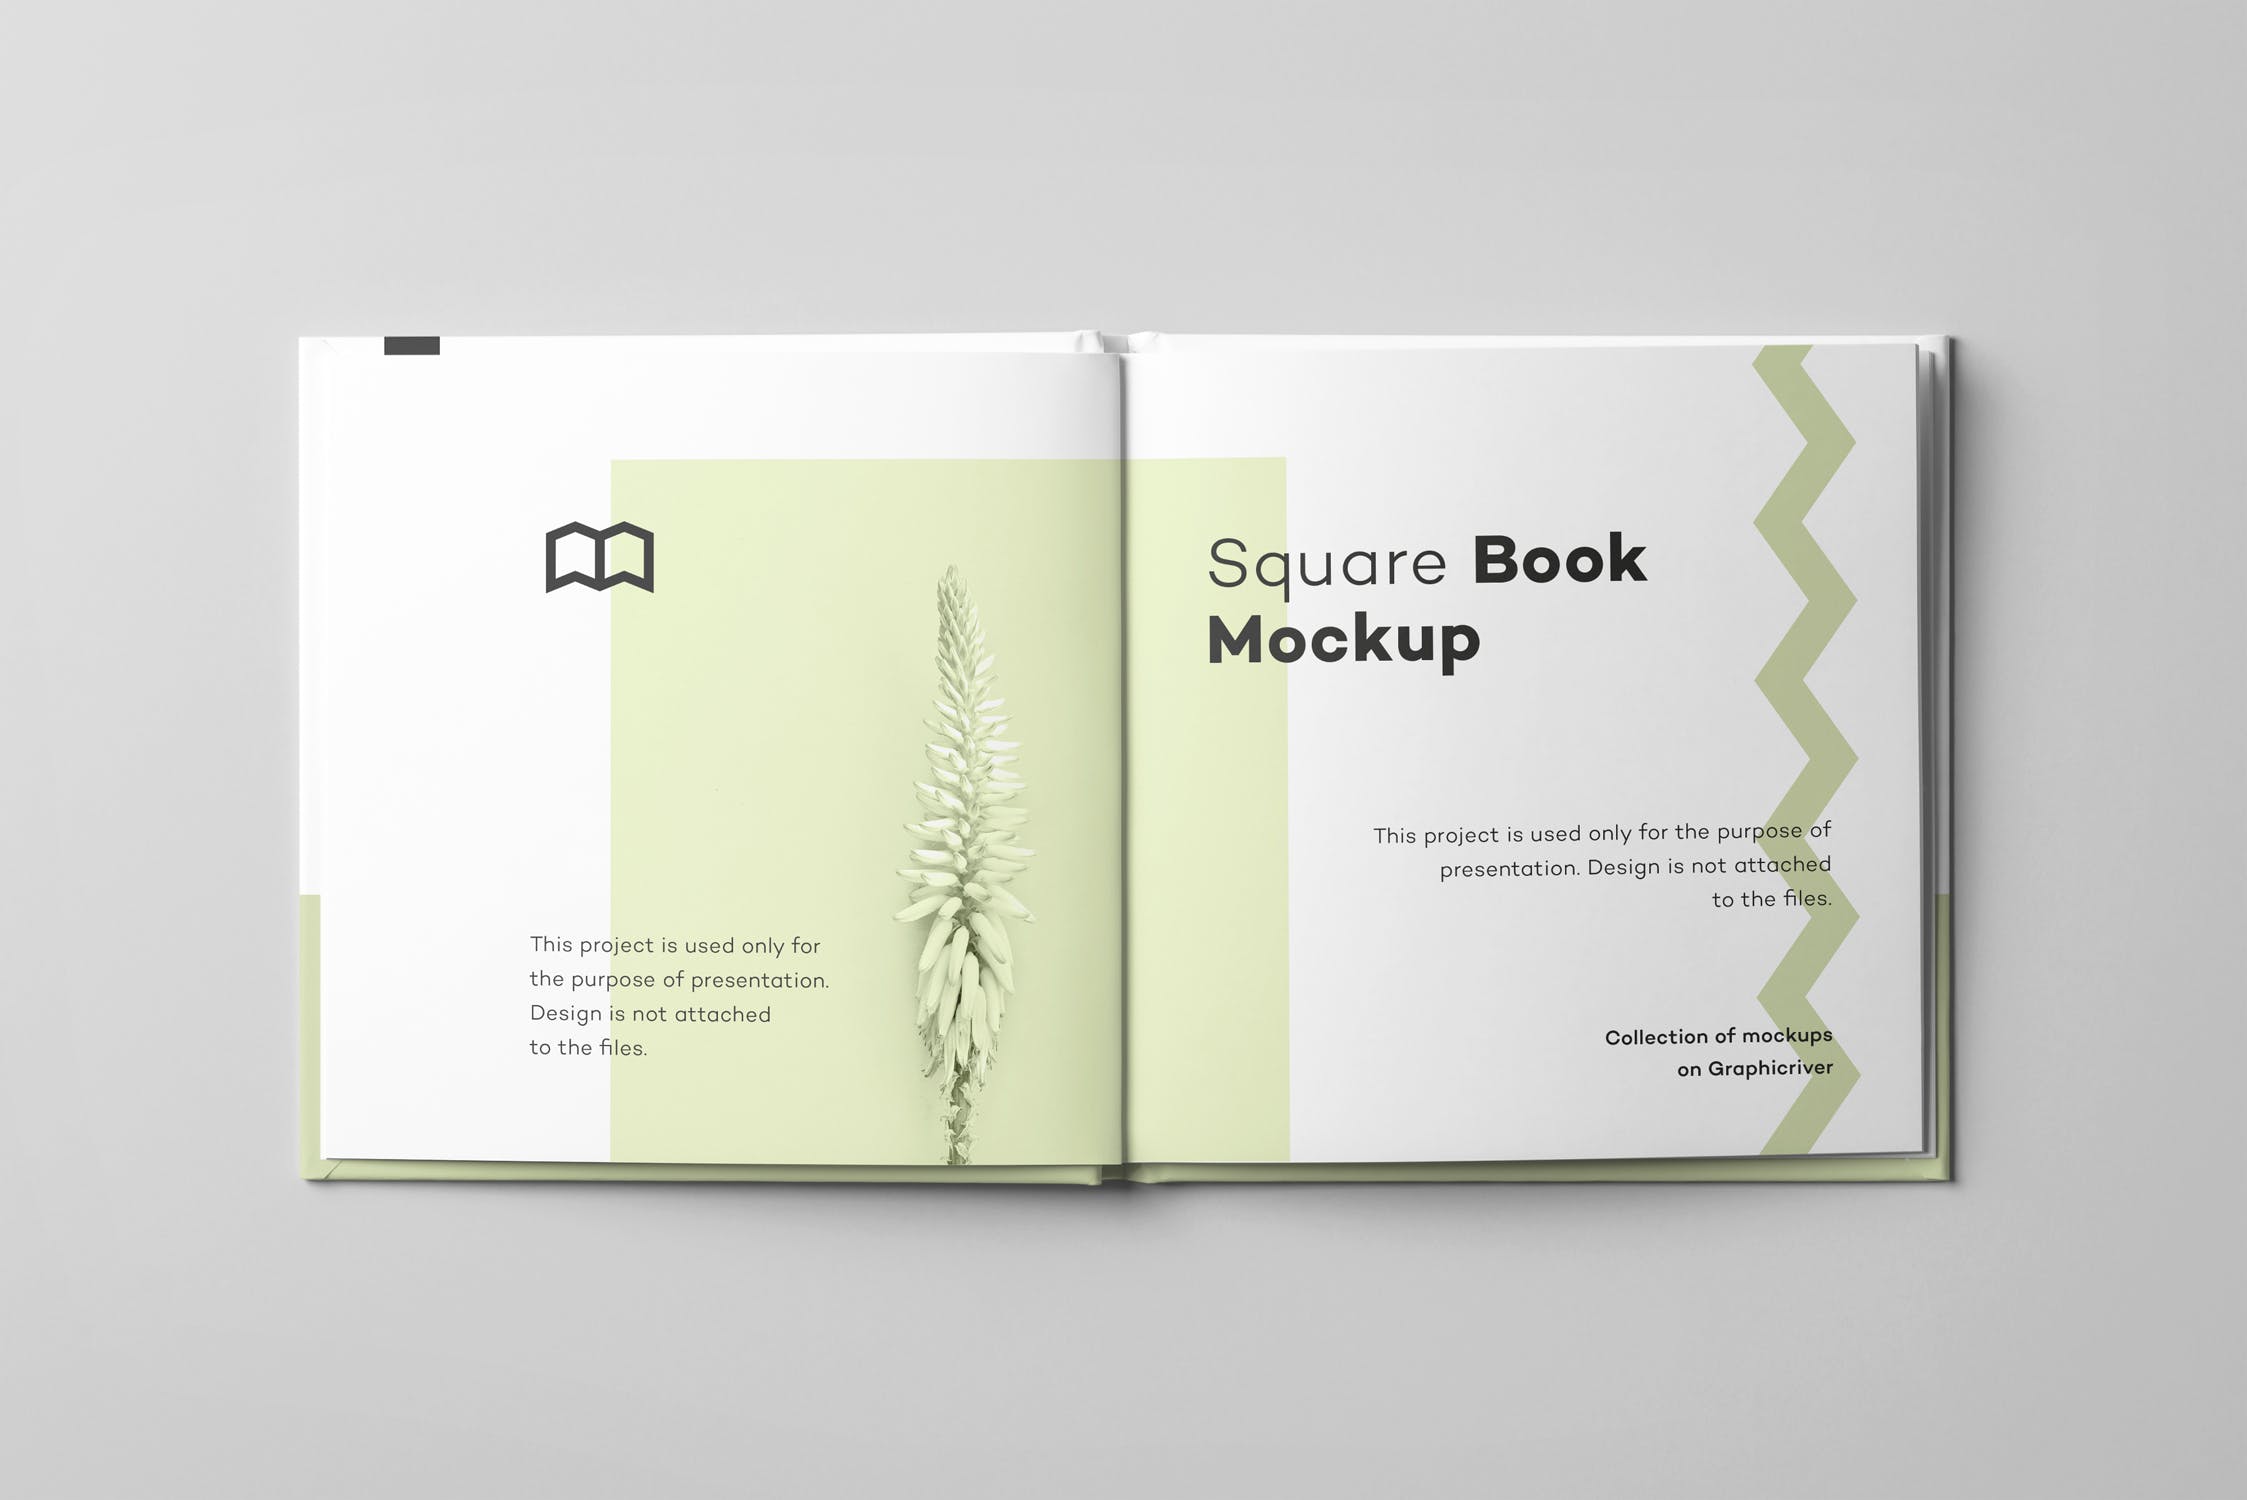 方形精装图书封面&内页版式设计预览样机 Square Book Mock up 2插图(13)